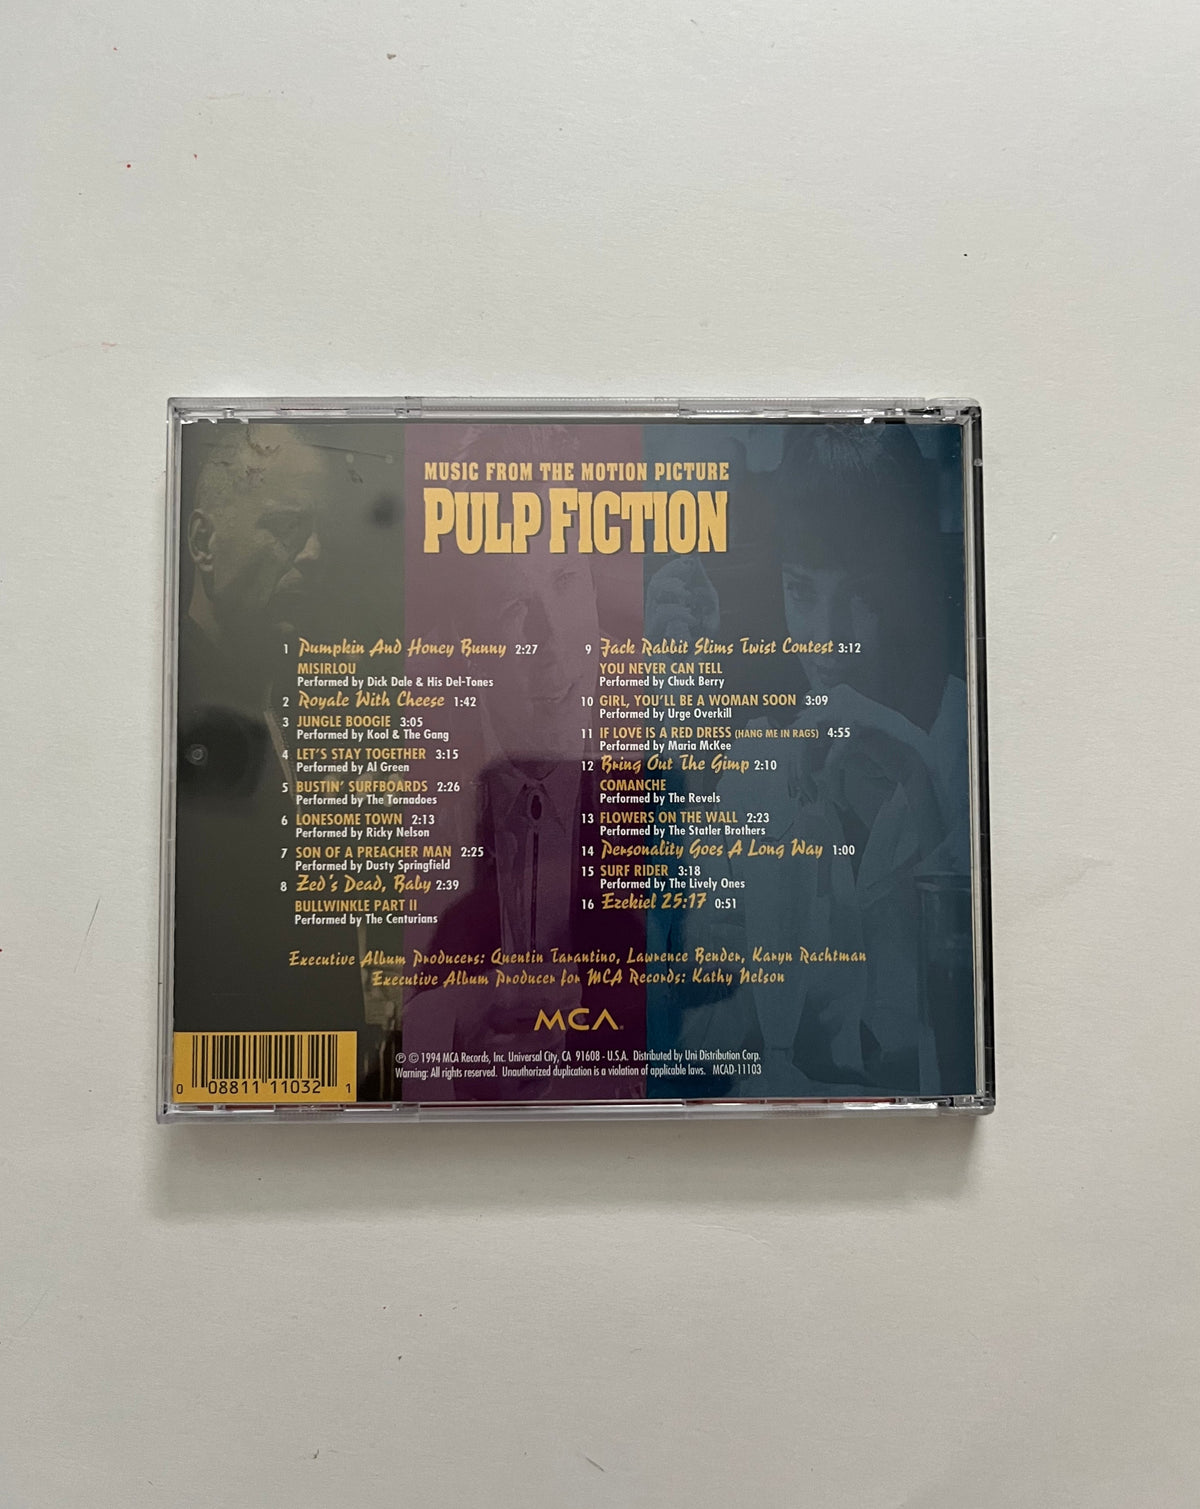 Pulp Fiction soundtrack